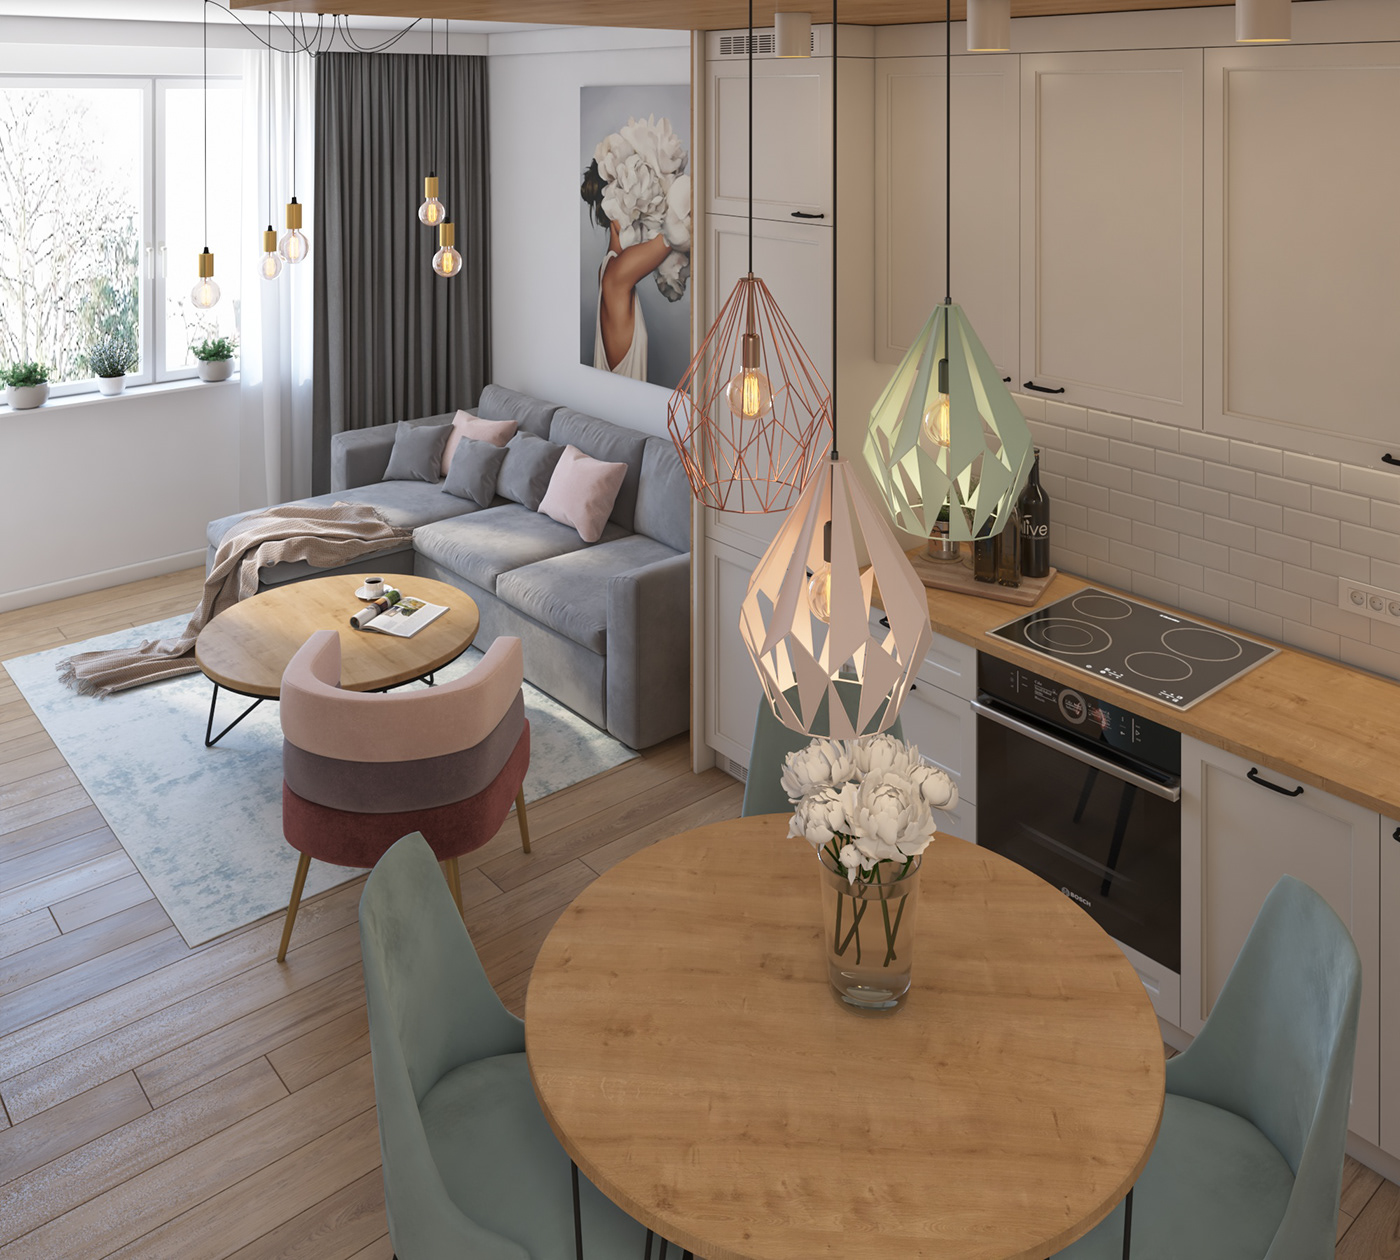 Interior kitchendesign living livingdesign livingroom modern pastel Render room vray